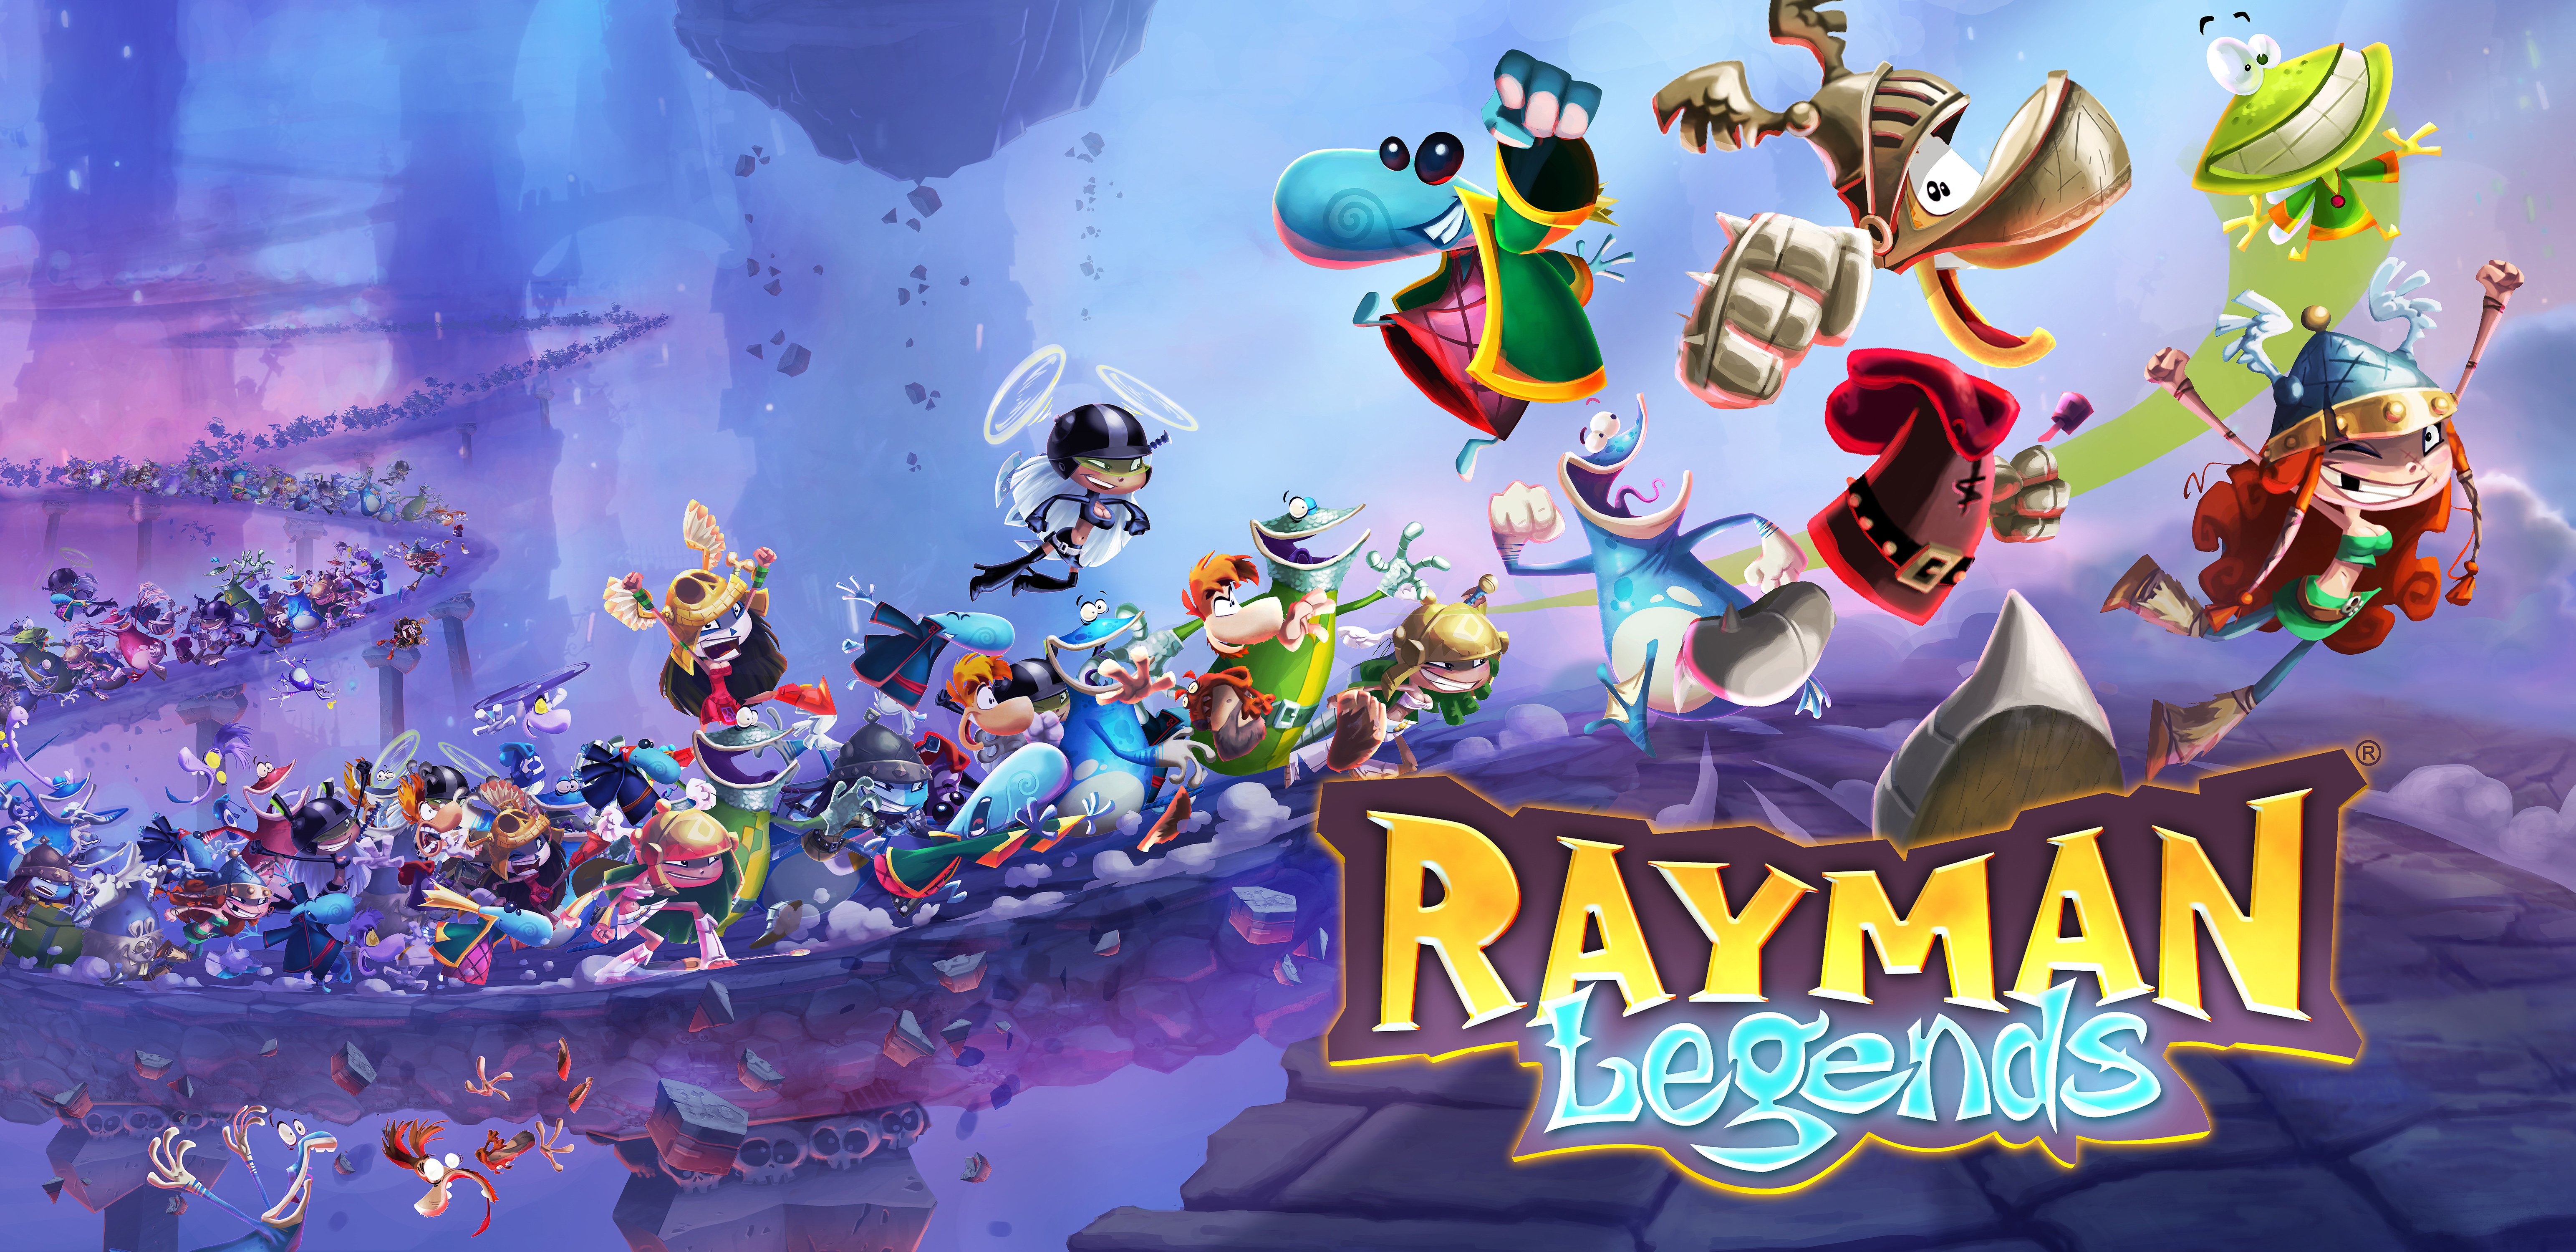 Rayman Legends 6173 x 3000 43